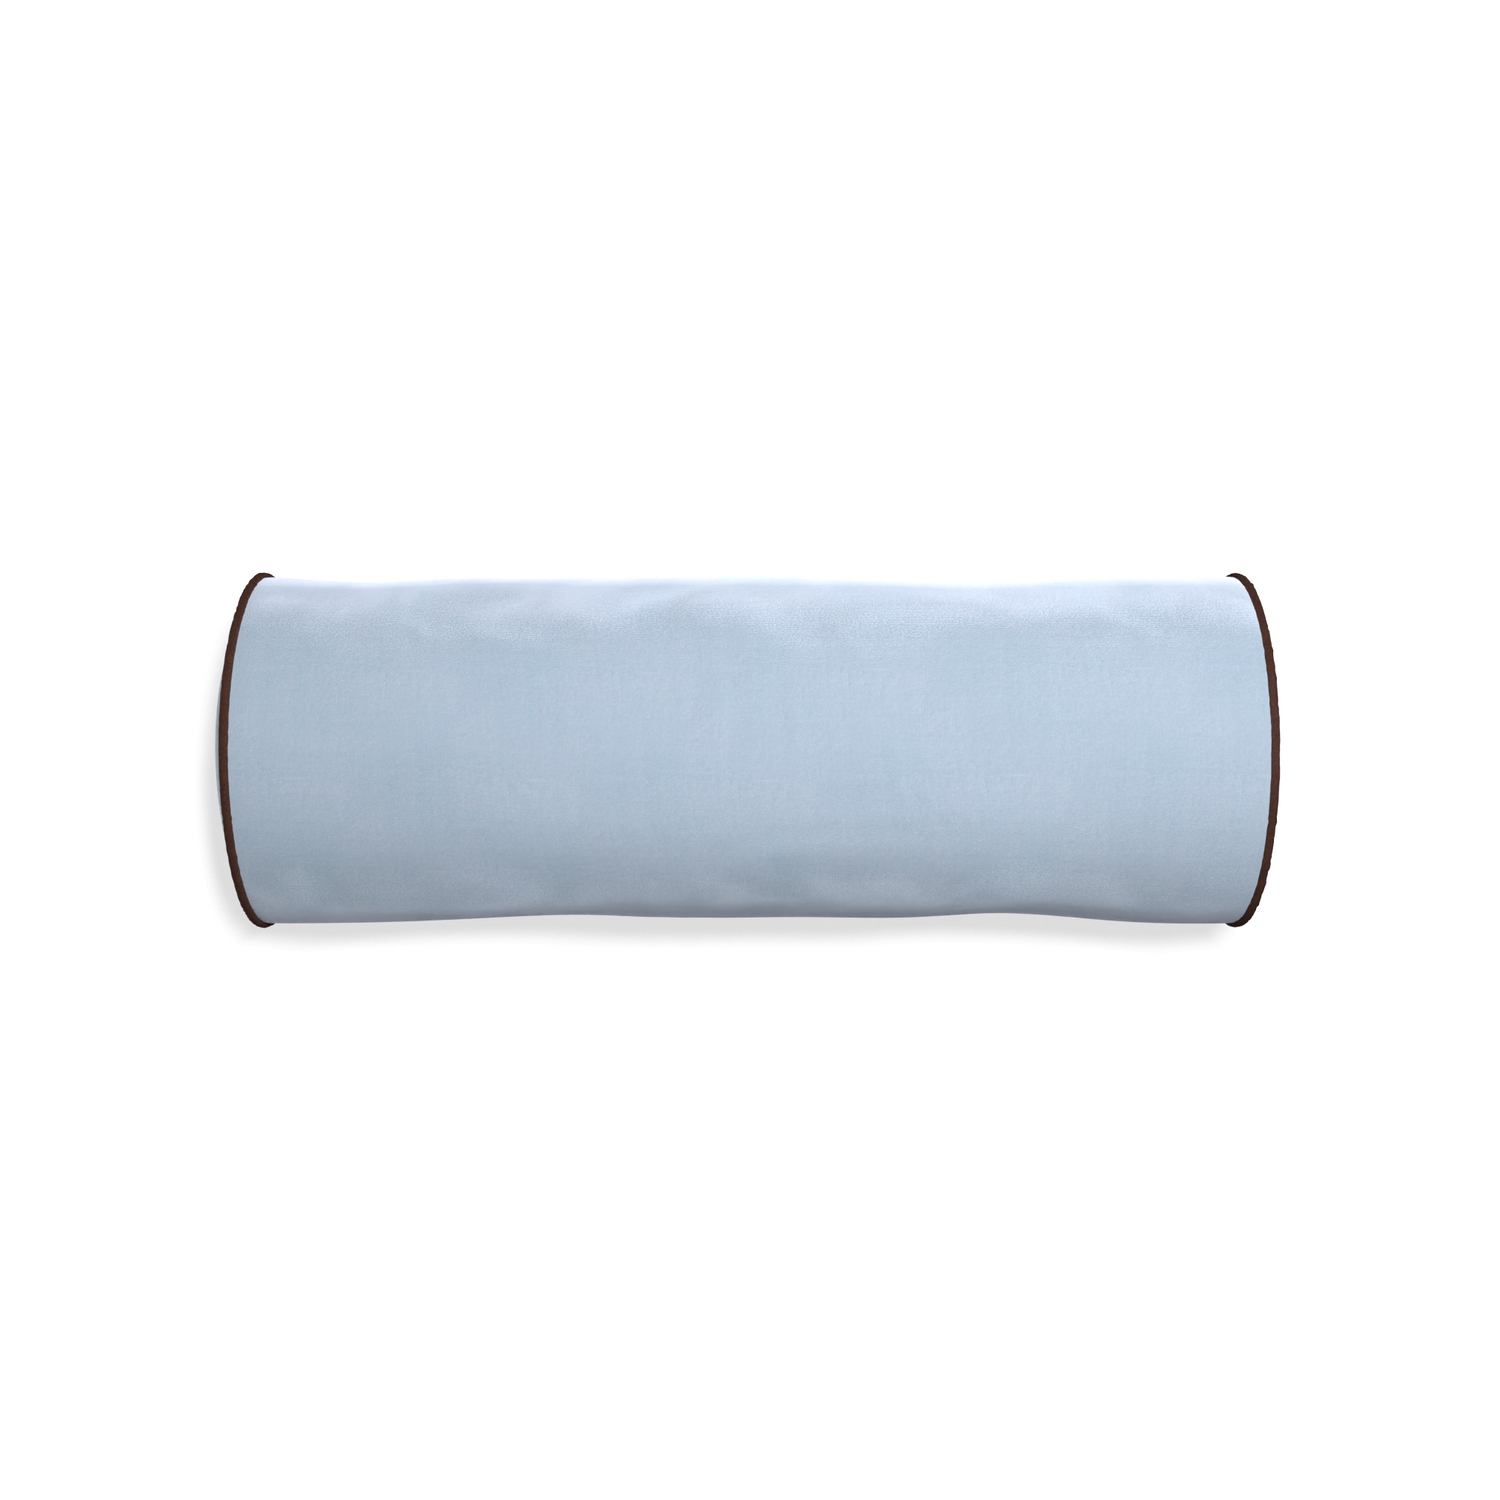 bolster light blue velvet pillow with brown piping